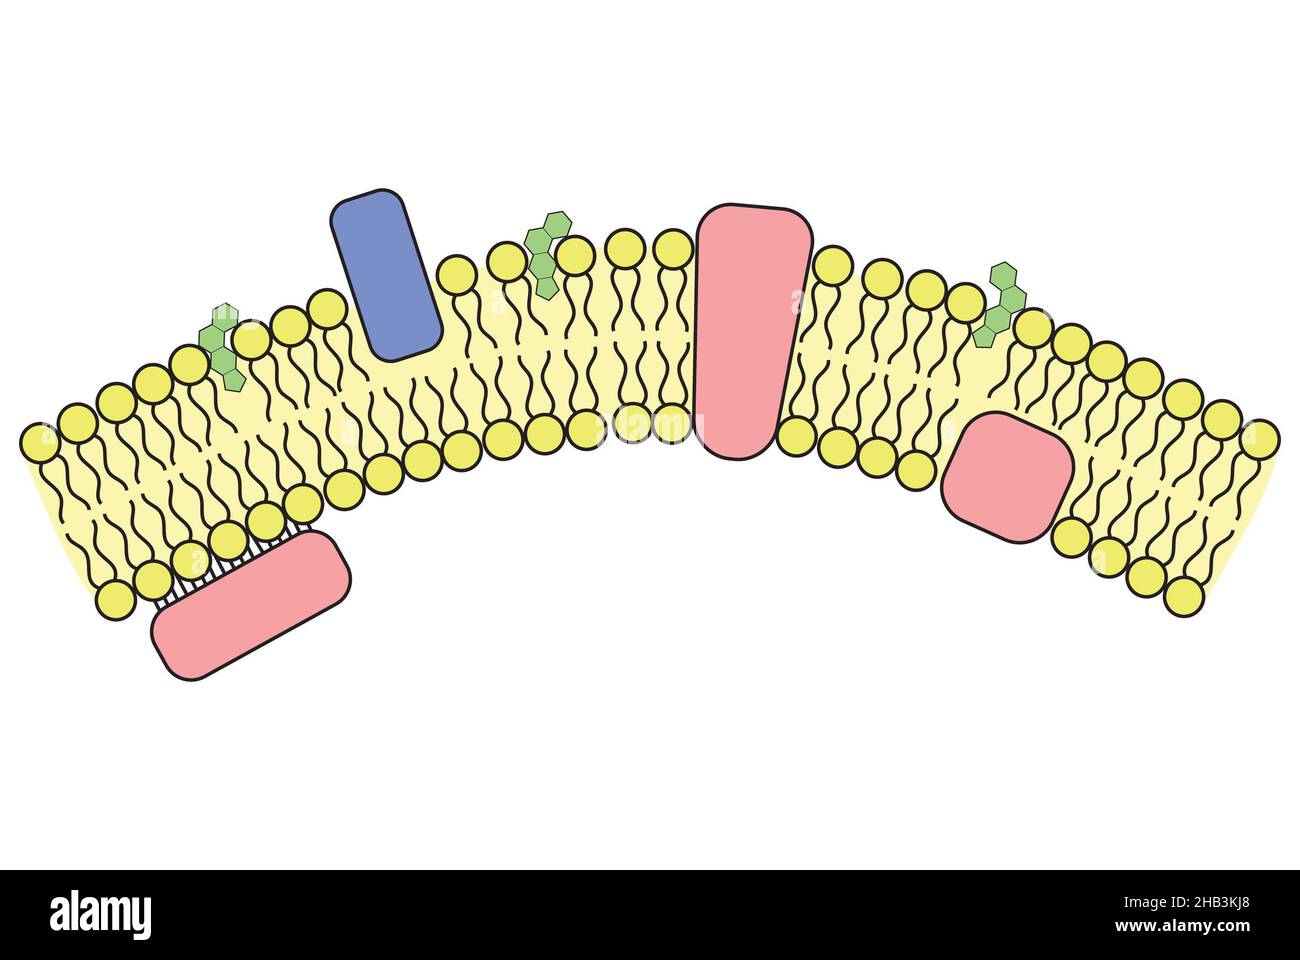 Einfache Darstellung der Zellmembran und eingearbeiteten Strukturen Stockfoto